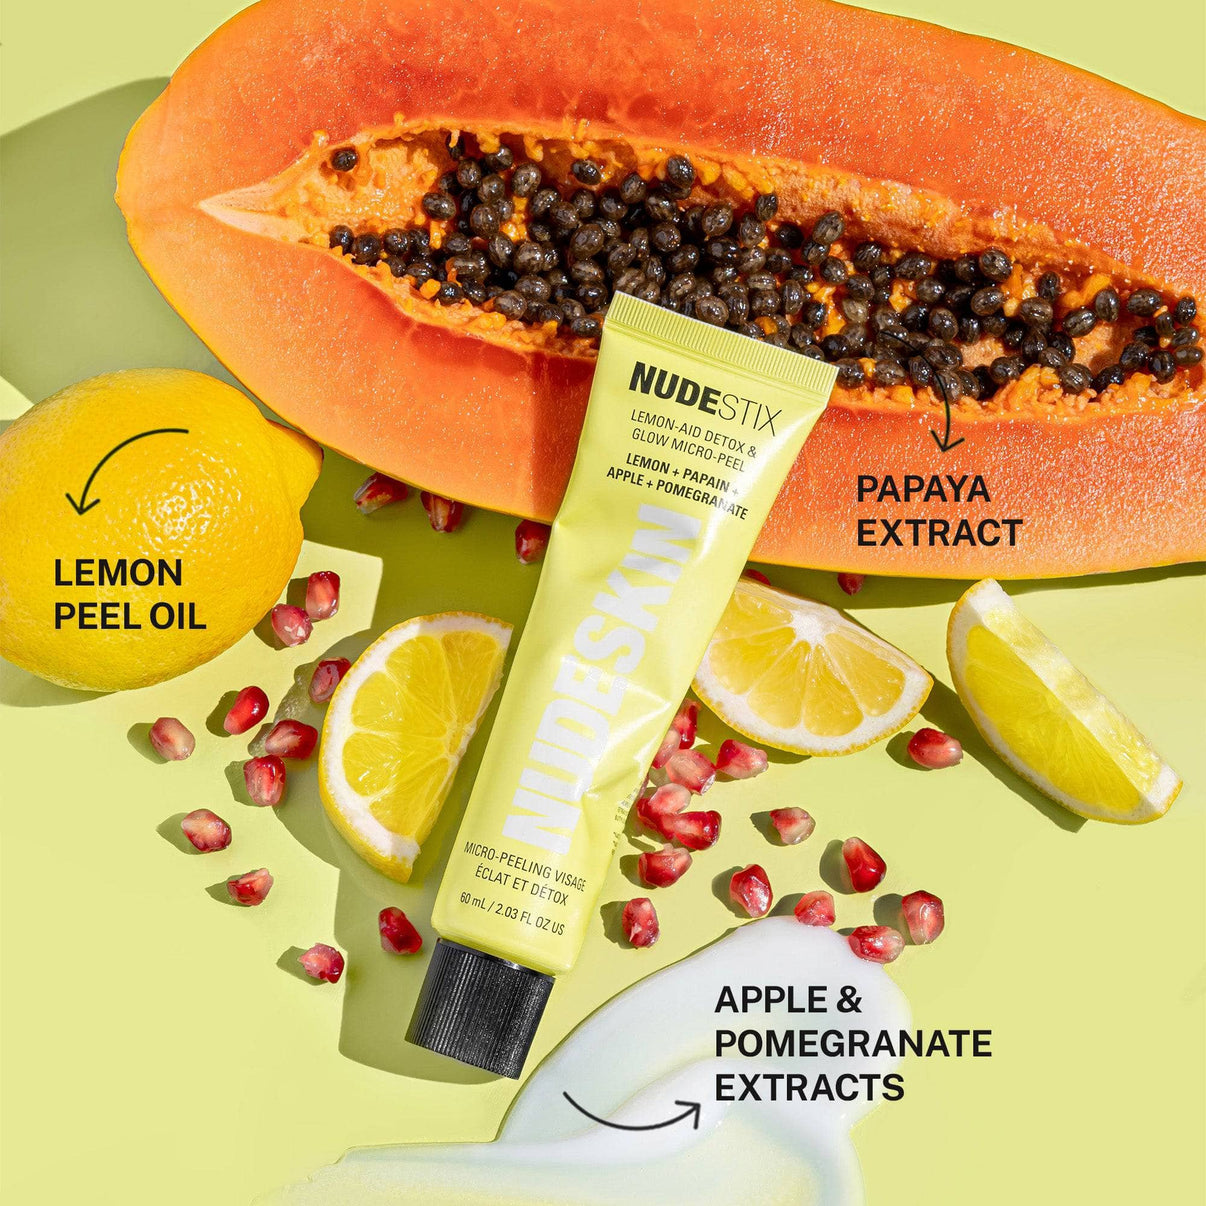 Lemon aid micro peel with papaya extract, lemon peel oil, apple & pomegranate